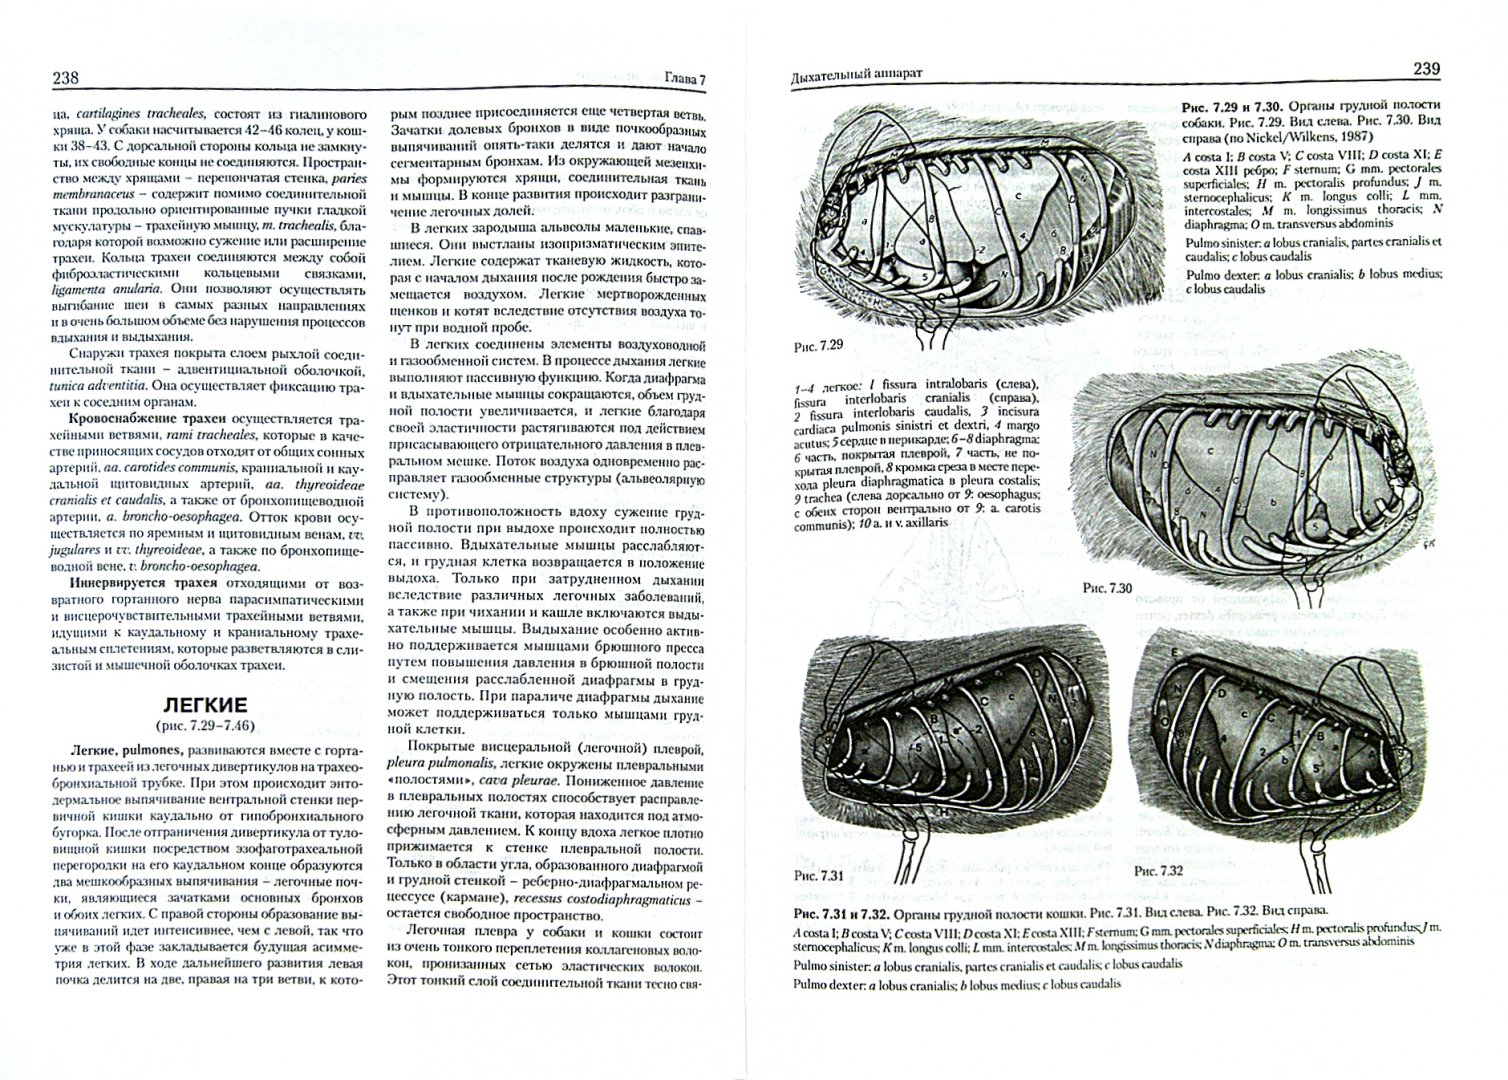 Иллюстрация 1 из 5 для Анатомия собаки и кошки - Амзельгрубер, Бёме, Фревейн | Лабиринт - книги. Источник: Лабиринт